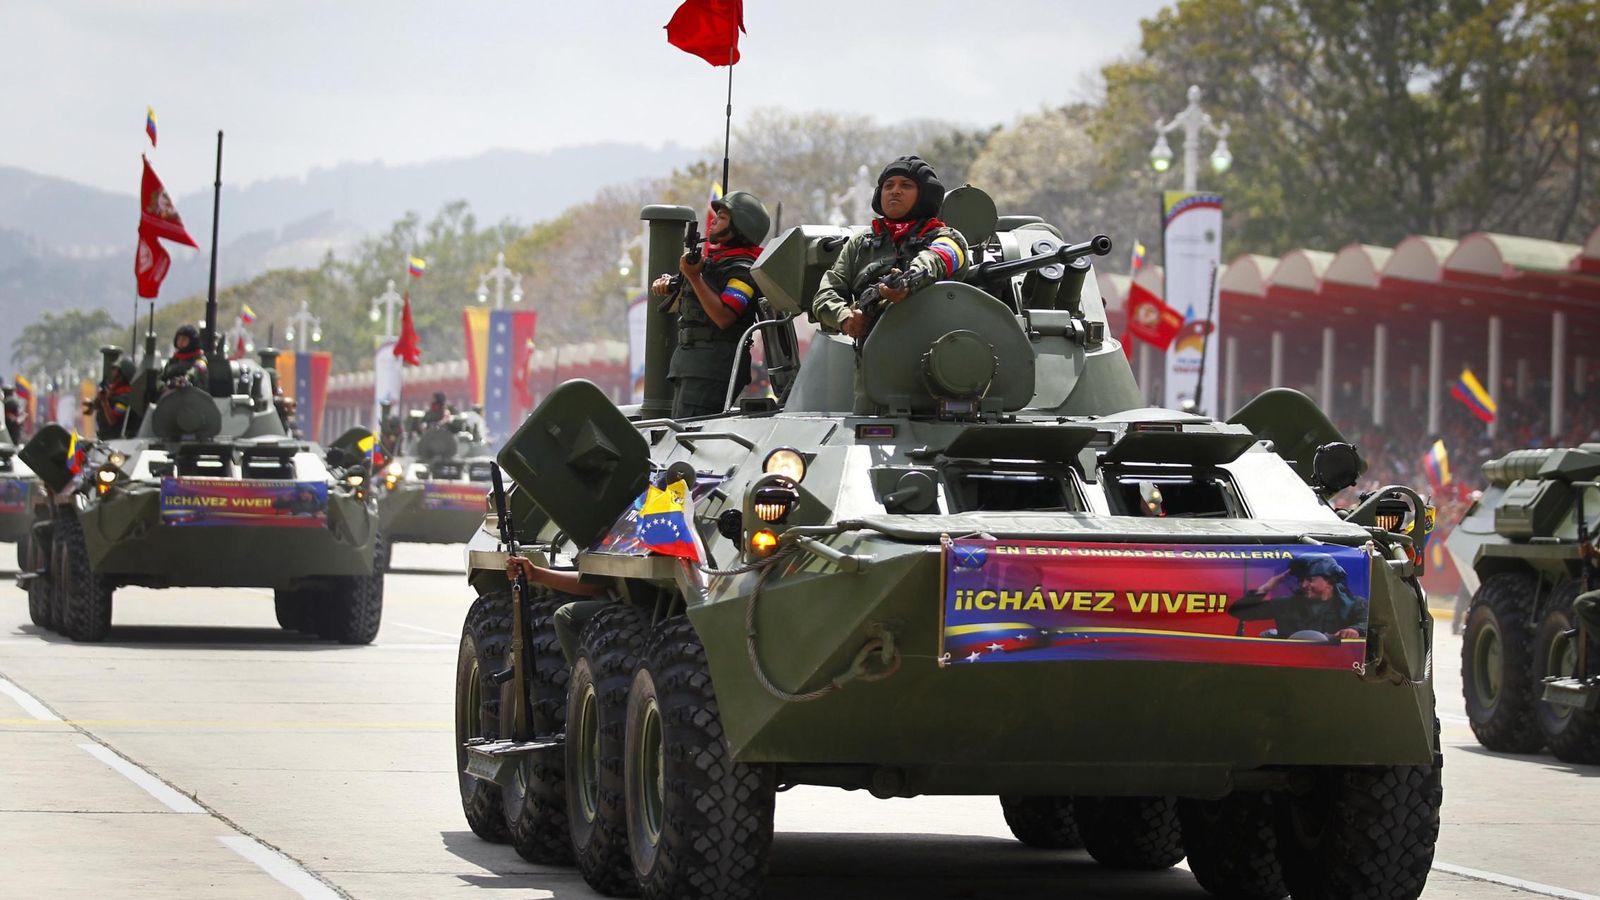 Foto: Tanques del ejército venezolano durante un desfile militar para conmemorar la muerte de Hugo Chávez, en marzo de 2014. (Reuters)